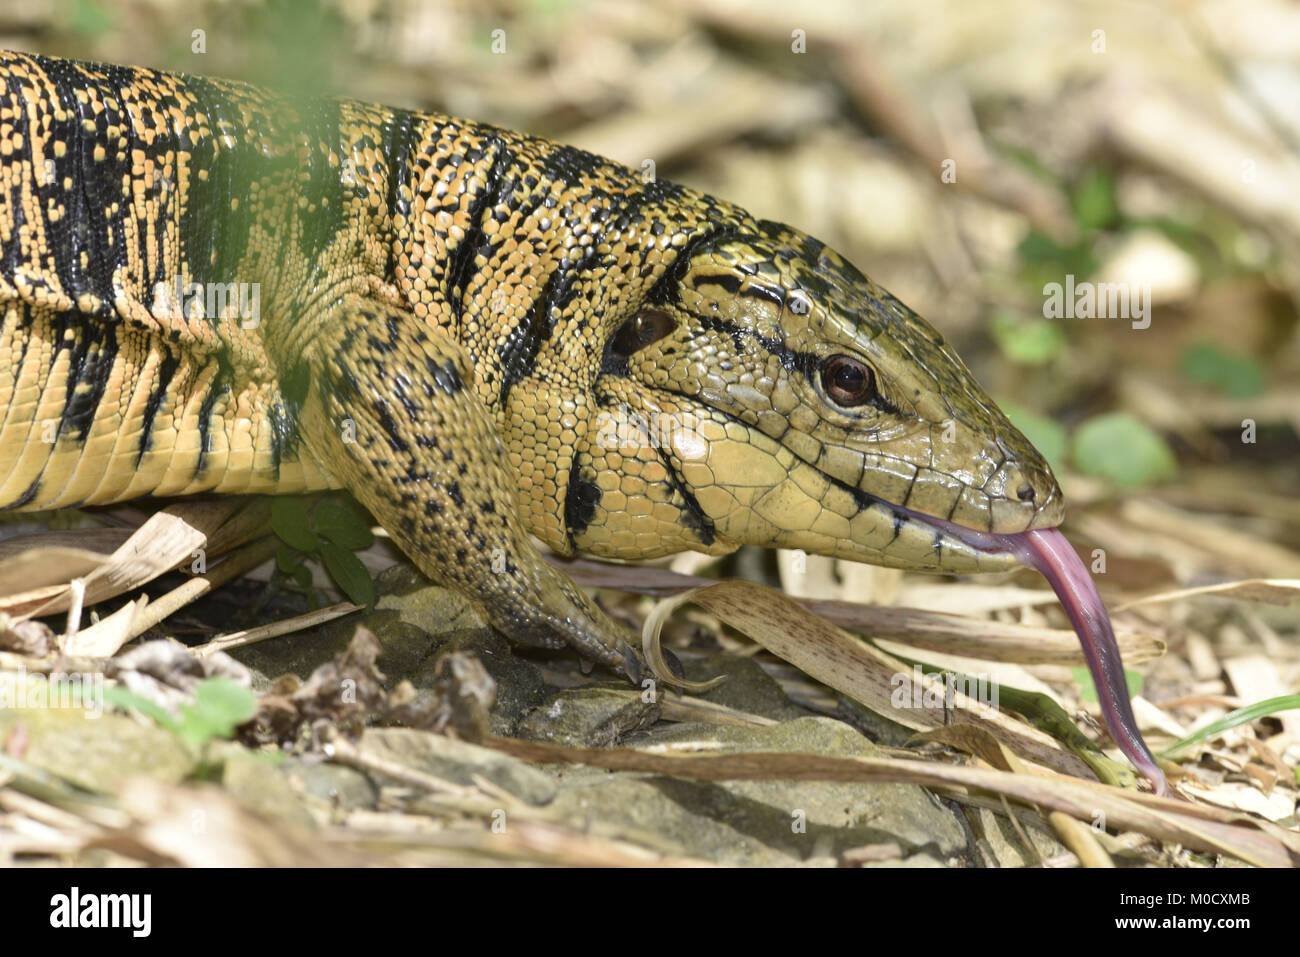 Trinidad Golden Tegu Lizard - Tupinambis (teguixin) cryptus Stock Photo